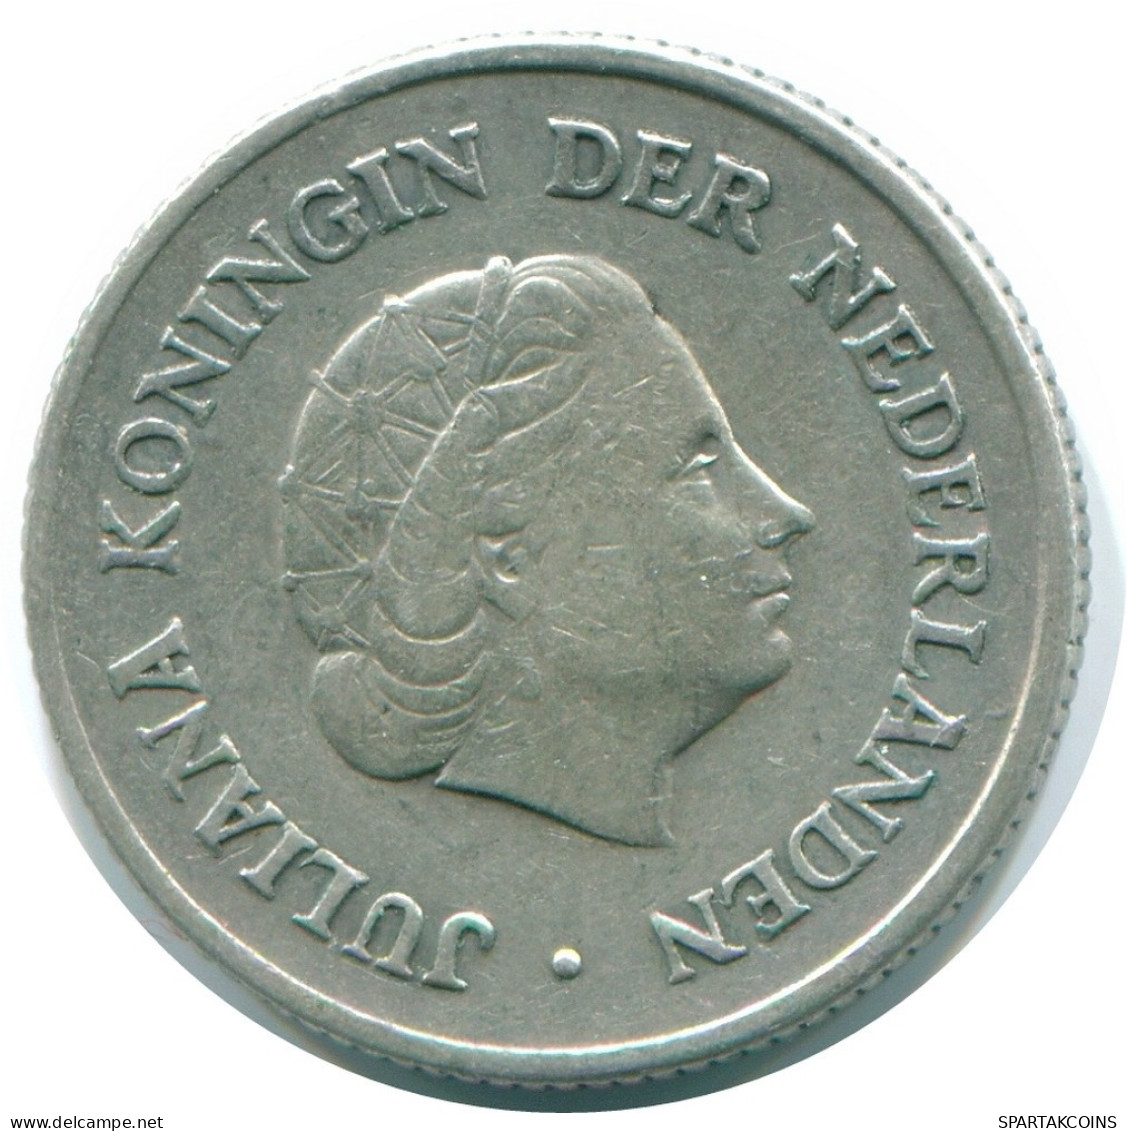 1/4 GULDEN 1960 NIEDERLÄNDISCHE ANTILLEN SILBER Koloniale Münze #NL11042.4.D.A - Antillas Neerlandesas